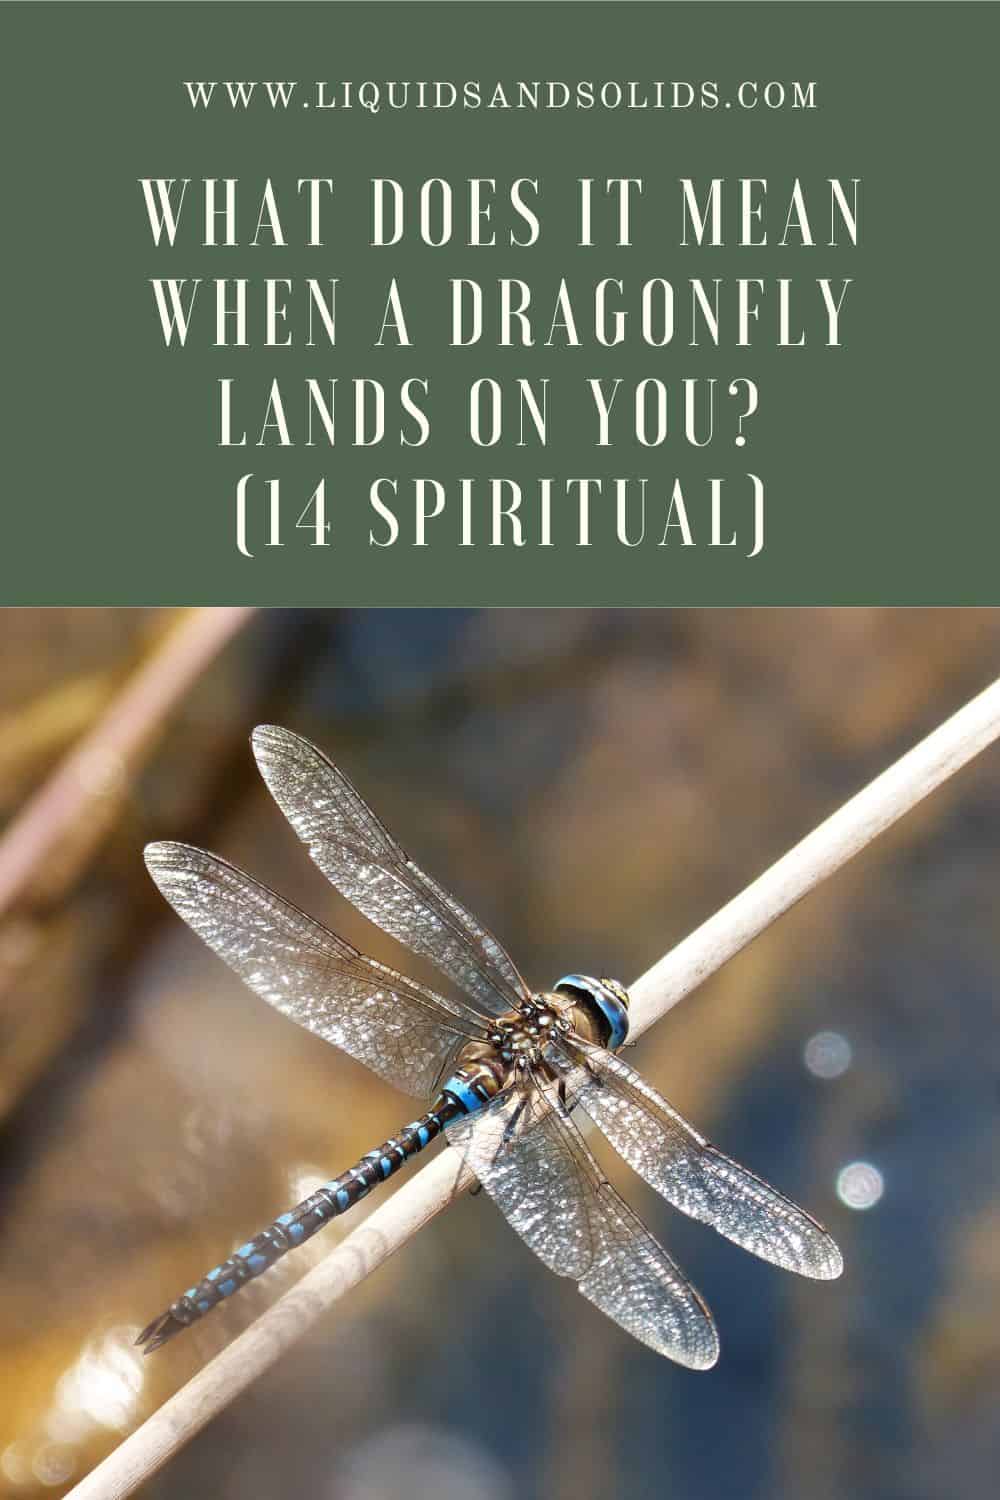  Mida tähendab see, kui liblikas maandub sinu peale? (14 vaimset tähendust)